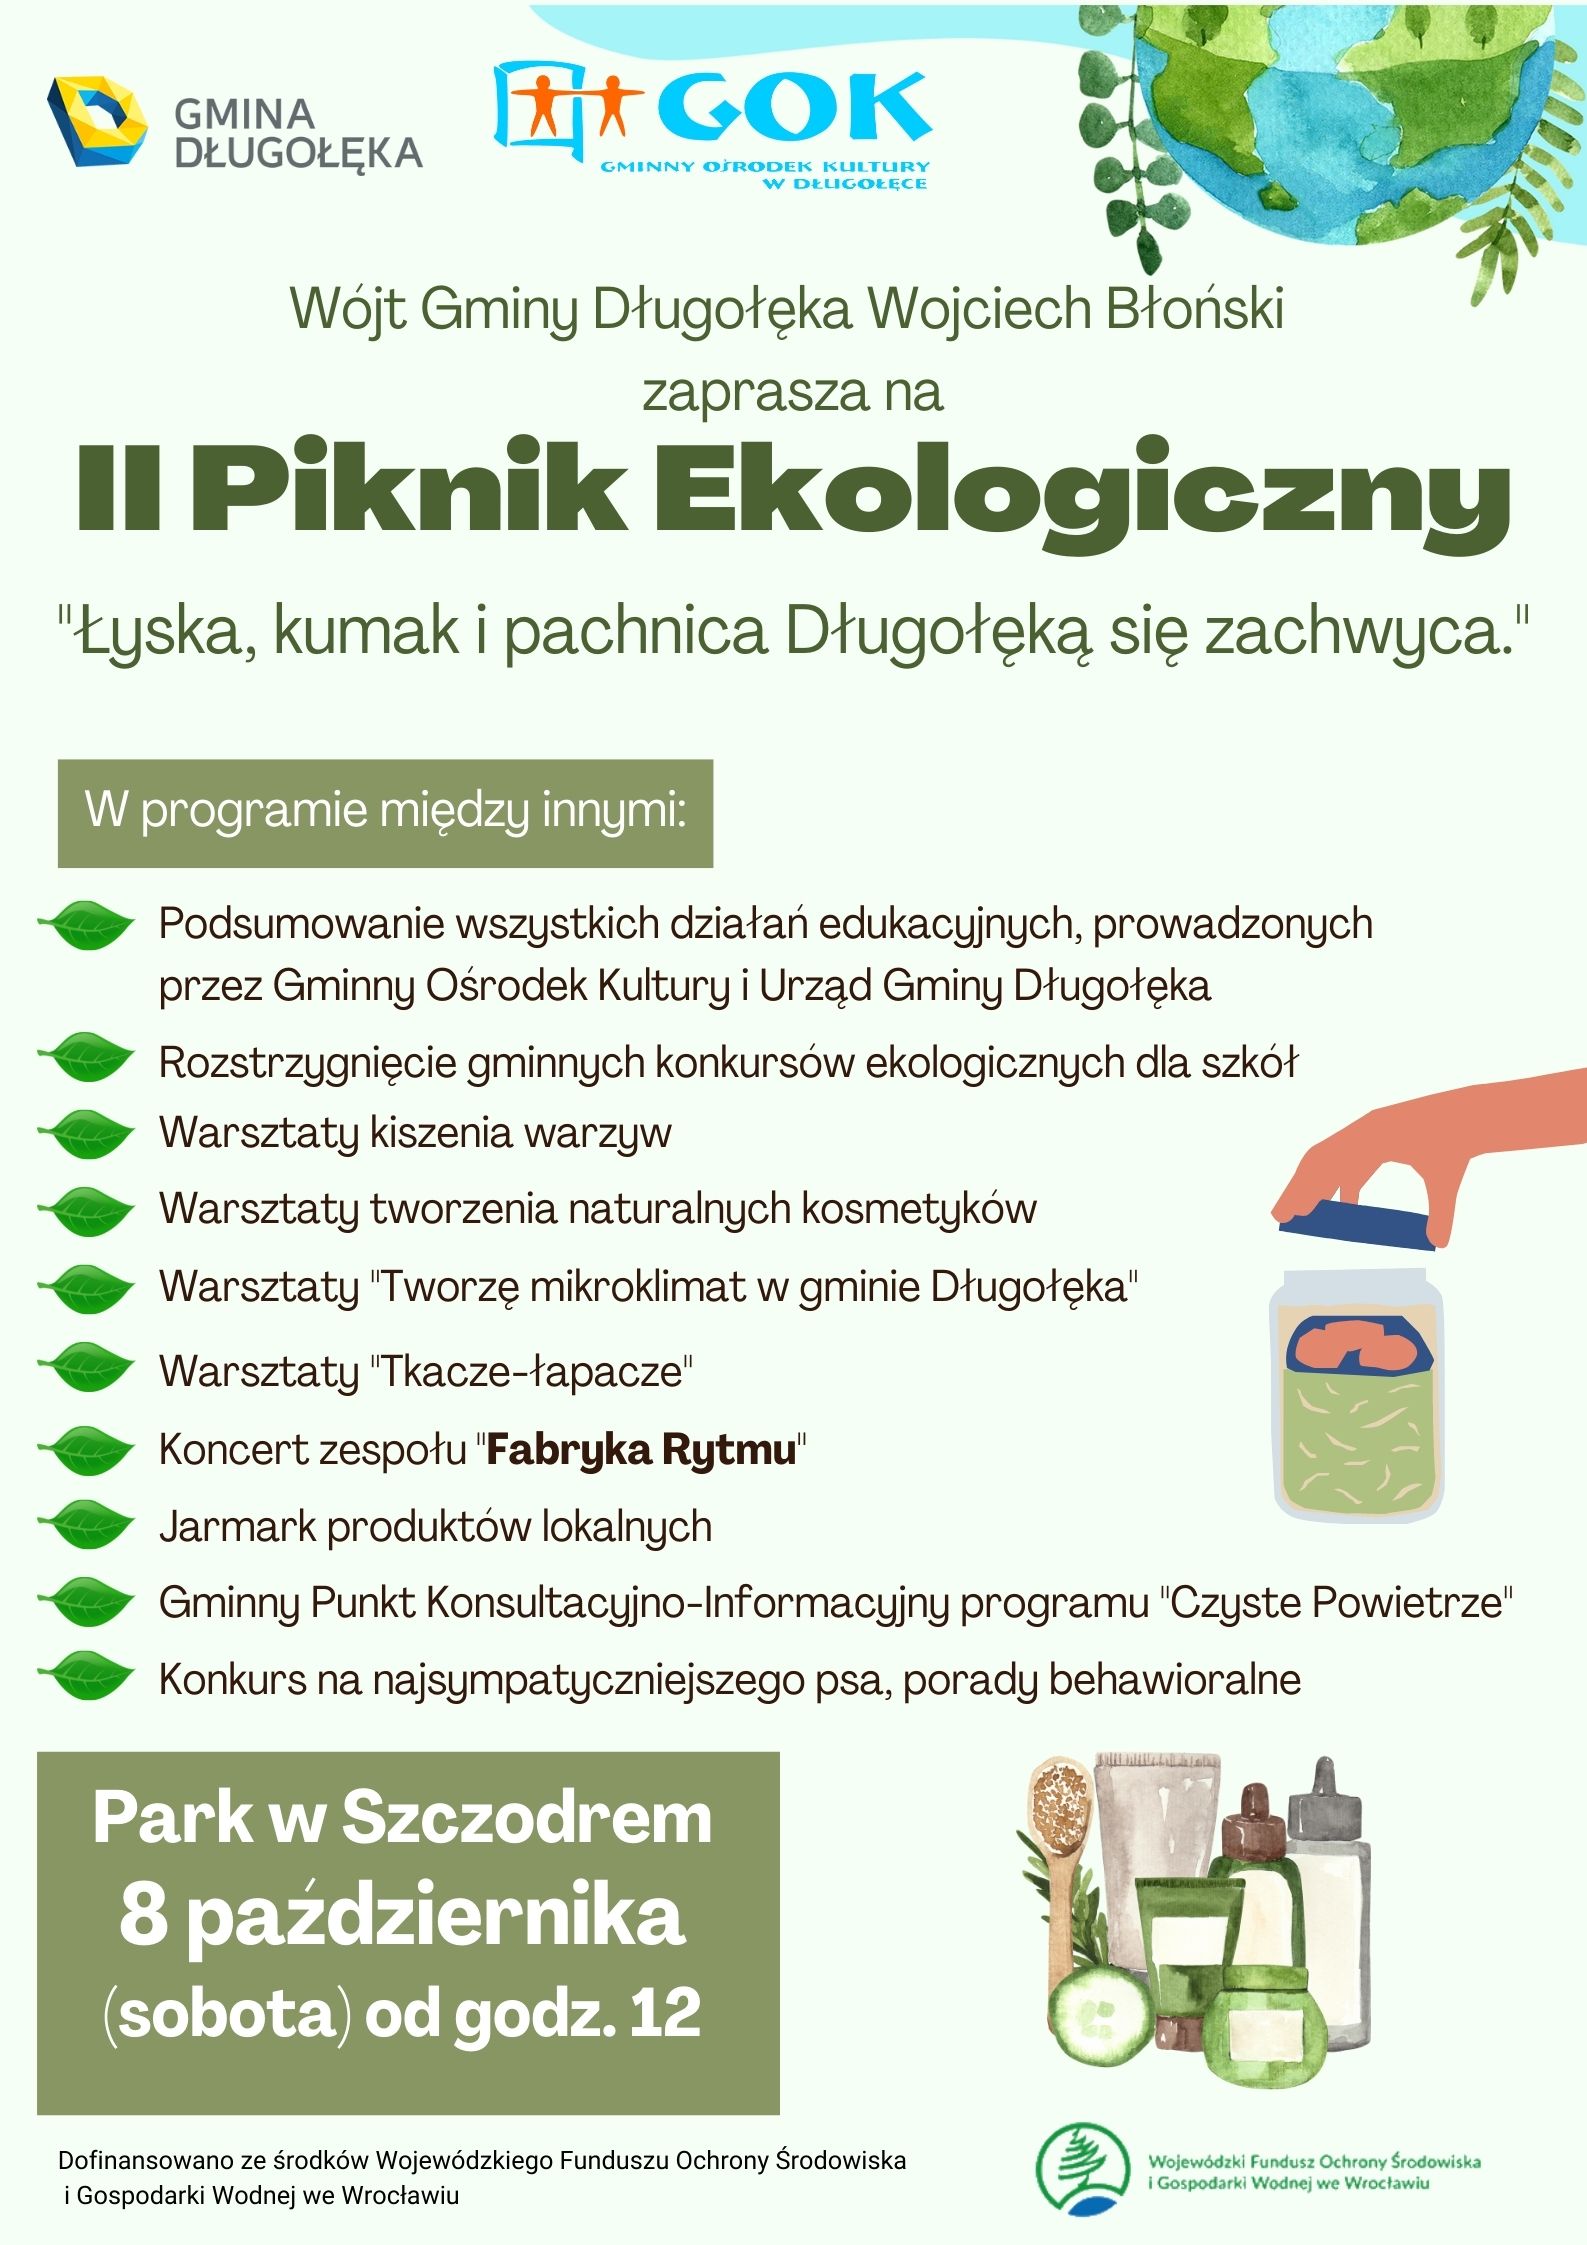 II Piknik Ekologiczny już 8 października w parku w Szczodrem